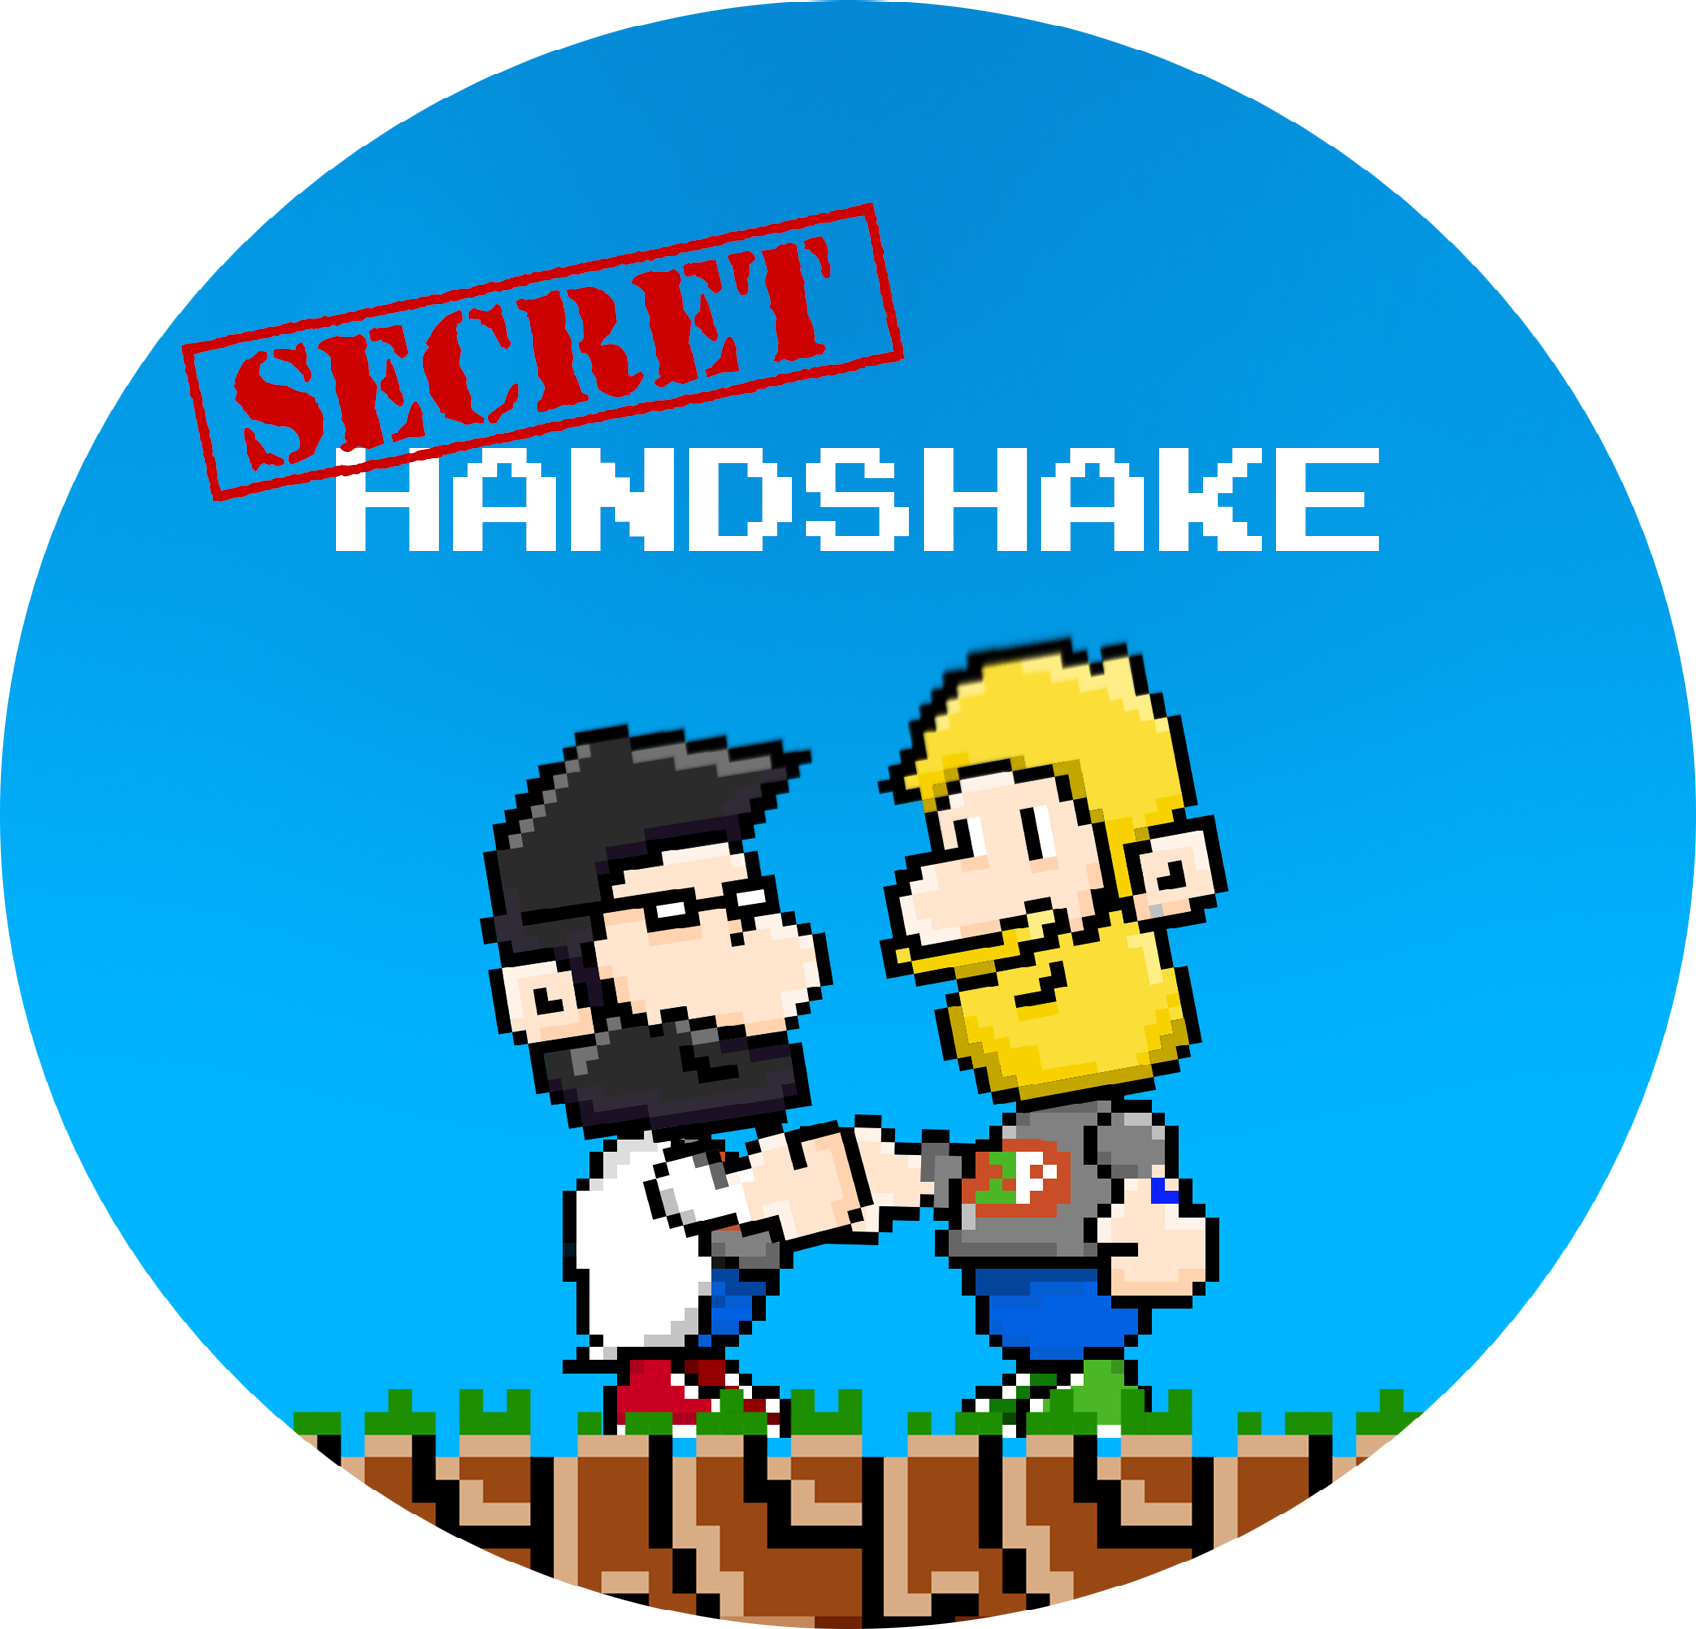 handshake clipart bro